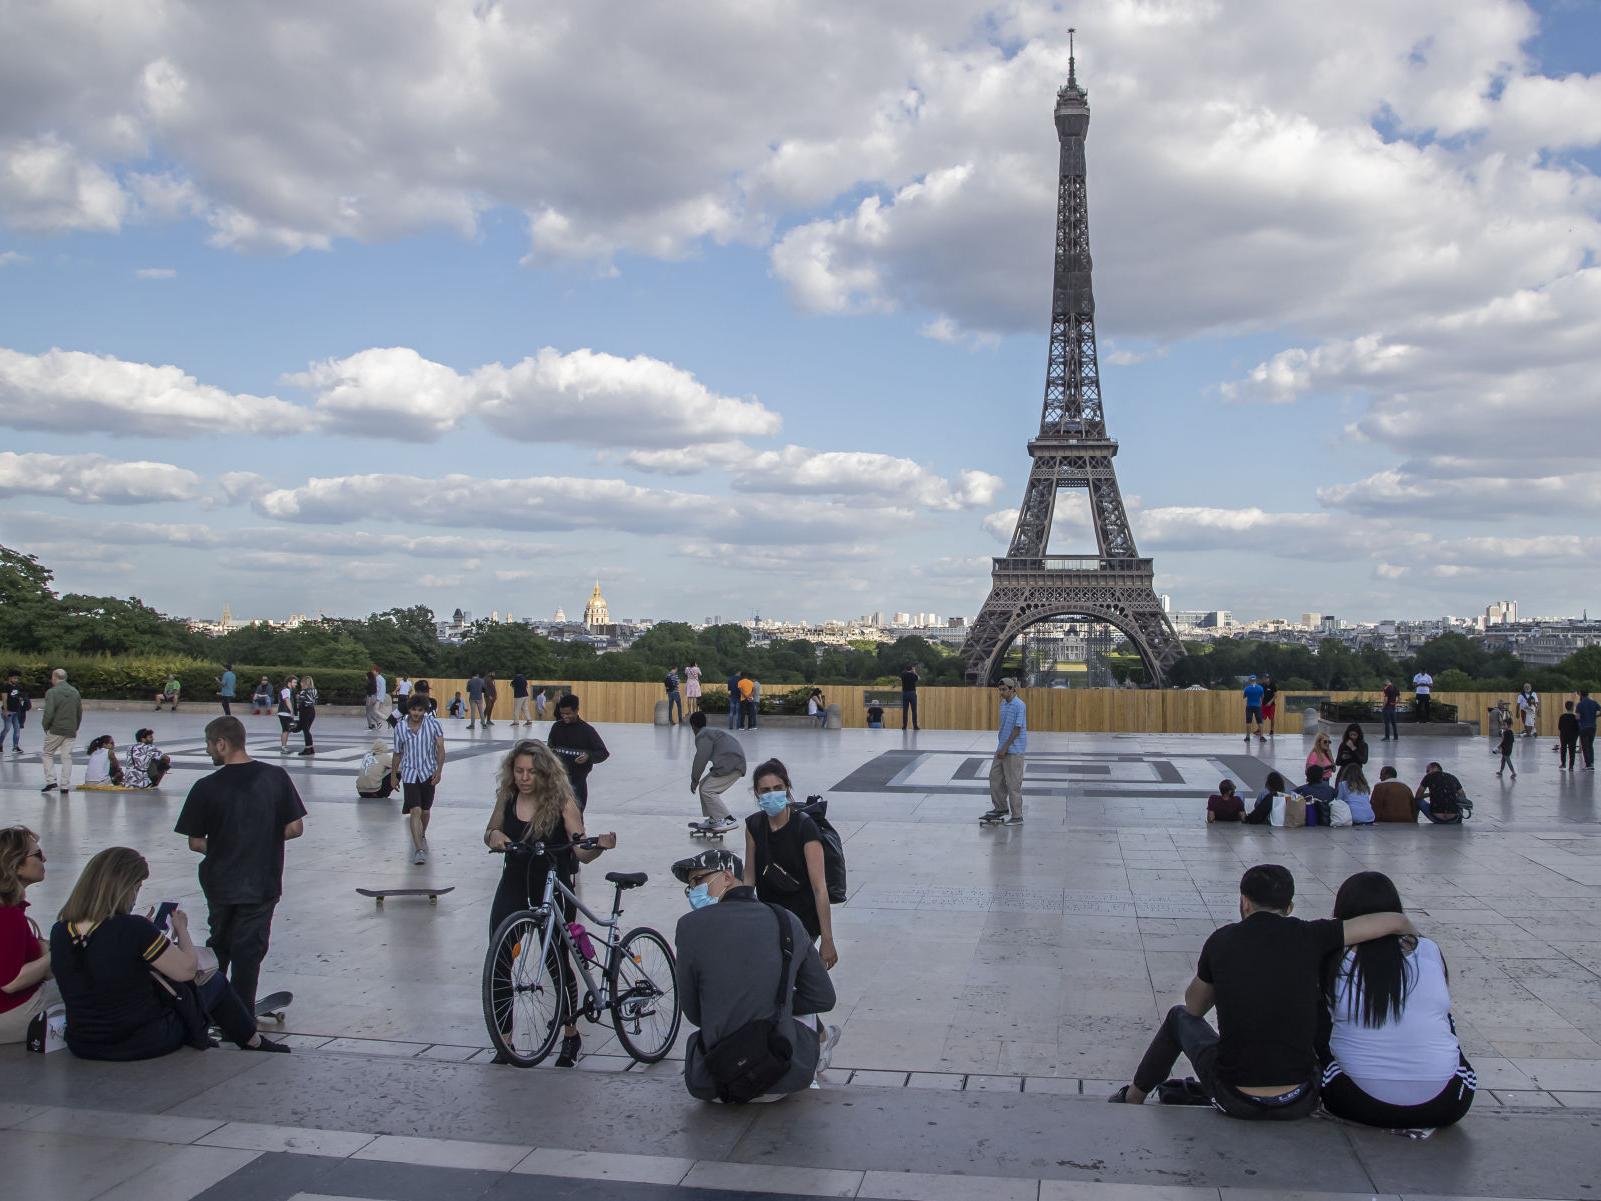 Tháp Eiffel mở cửa trở lại là tin mừng với các hộ kinh doanh dịch vụ